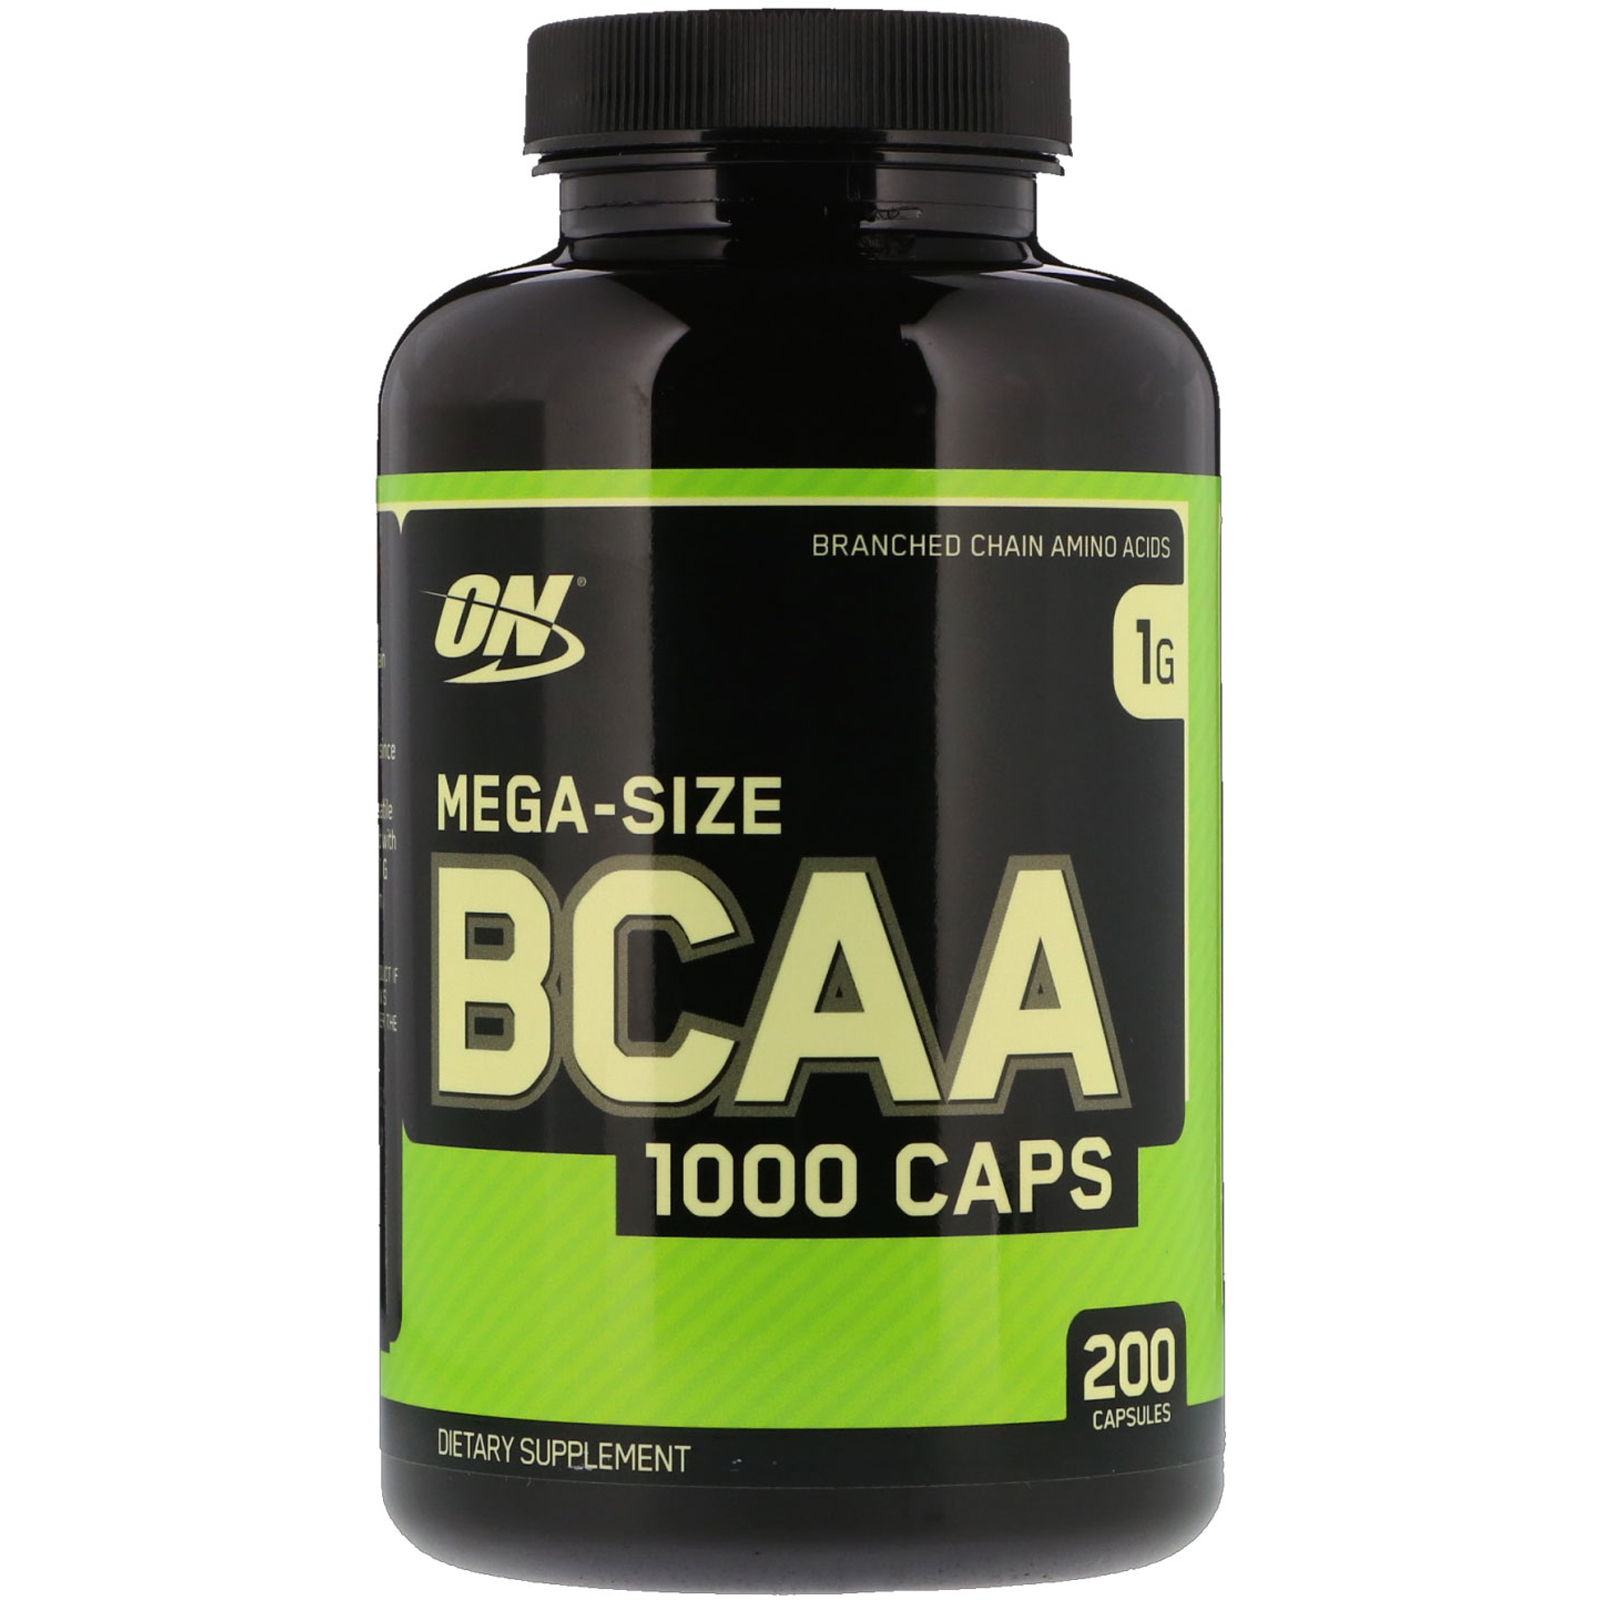 افضل bcaa للضخامه أفضل BCAA للتنشيف انواع BCAA BCAA فوائد افضل نكهة BCAA Best BCAA فوائد Xtend BCAA فوائد واضرار أفضل أنواع الأمينو واسعارها جلوتامين